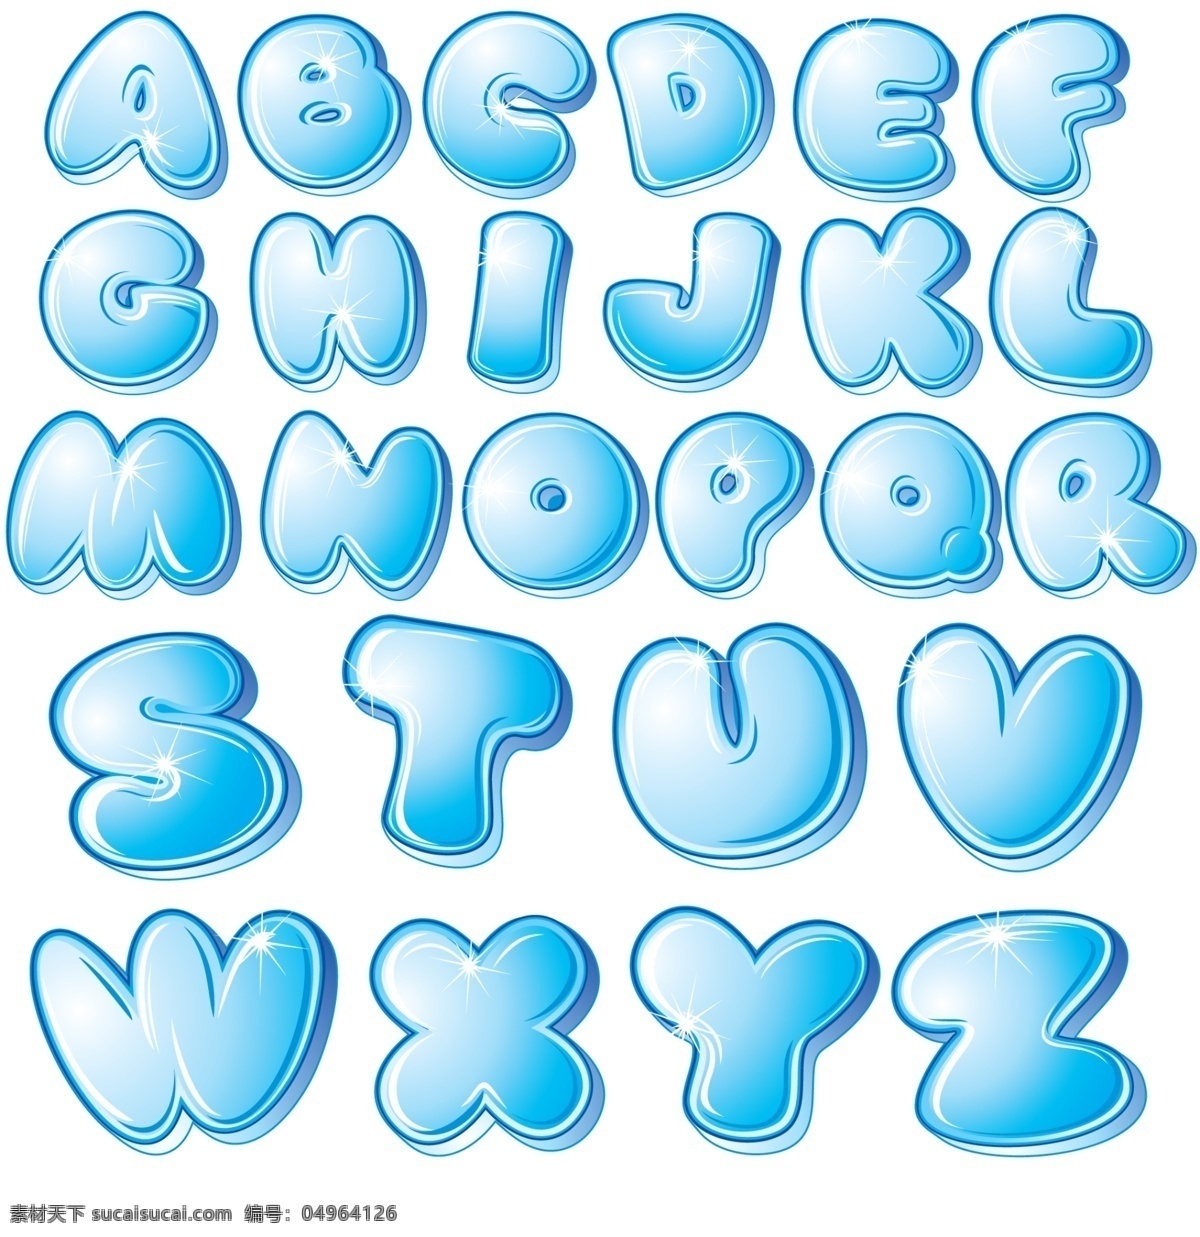 卡通 水晶 字母 矢量立体字母 蓝色 可爱 字母图片 26字母 水晶英文字母 ai矢量 矢量图下载